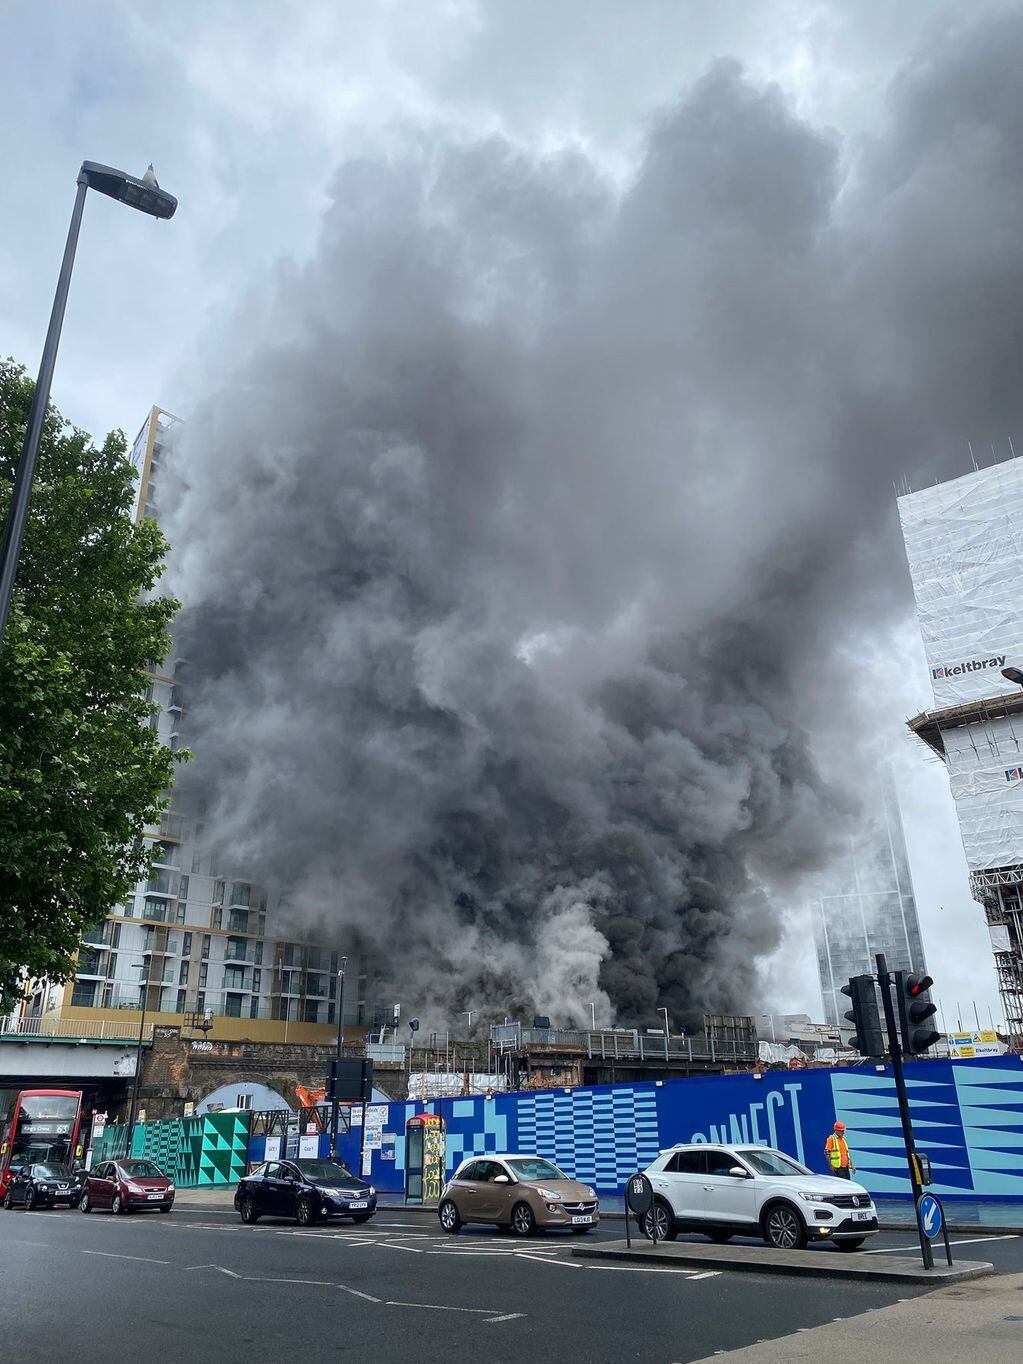 Impactante explosión en la estación de metro Elephant & Castle en Londres